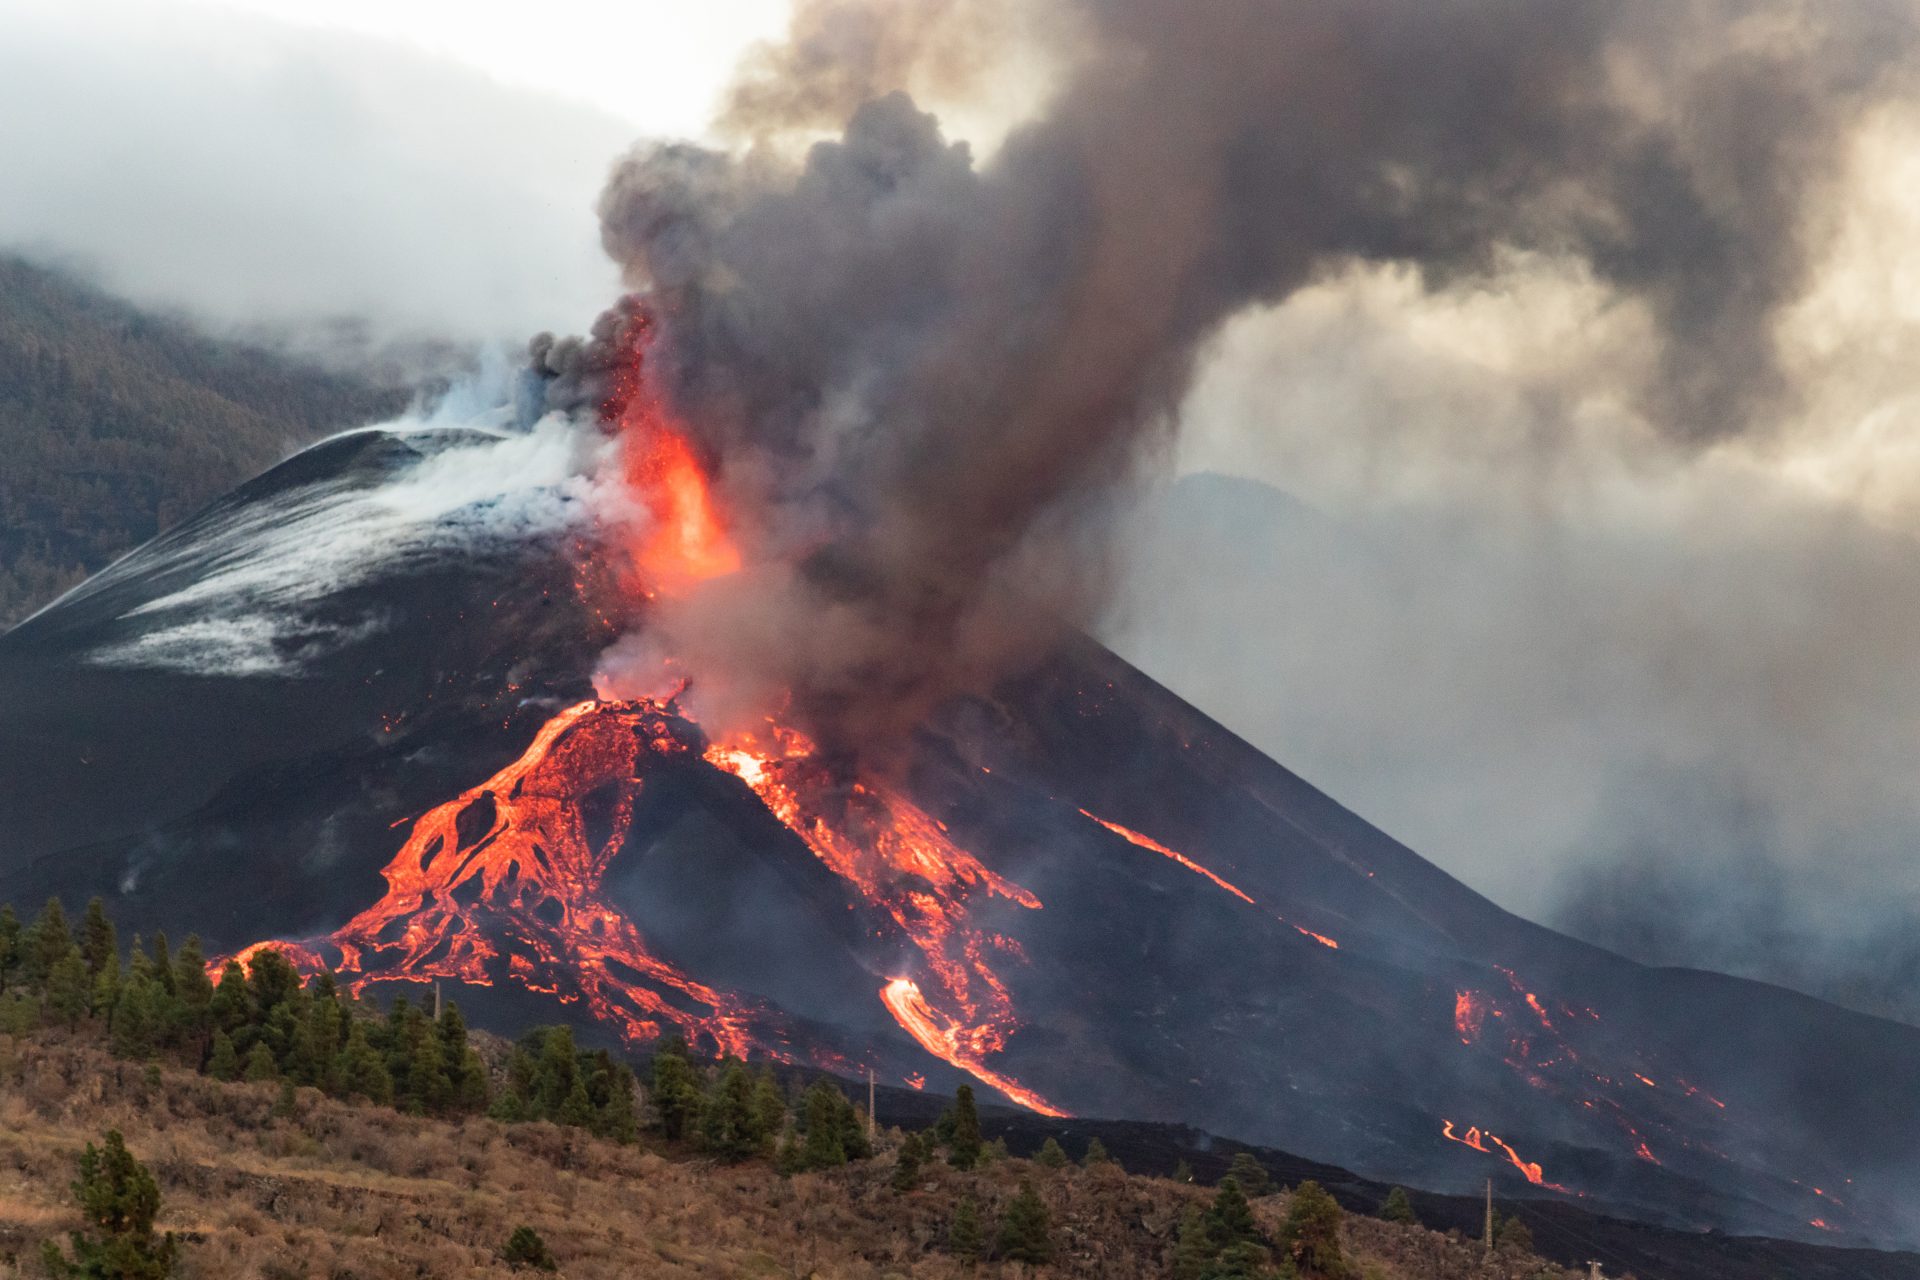 Volcán en erupción generando ceniza que afecta la salud